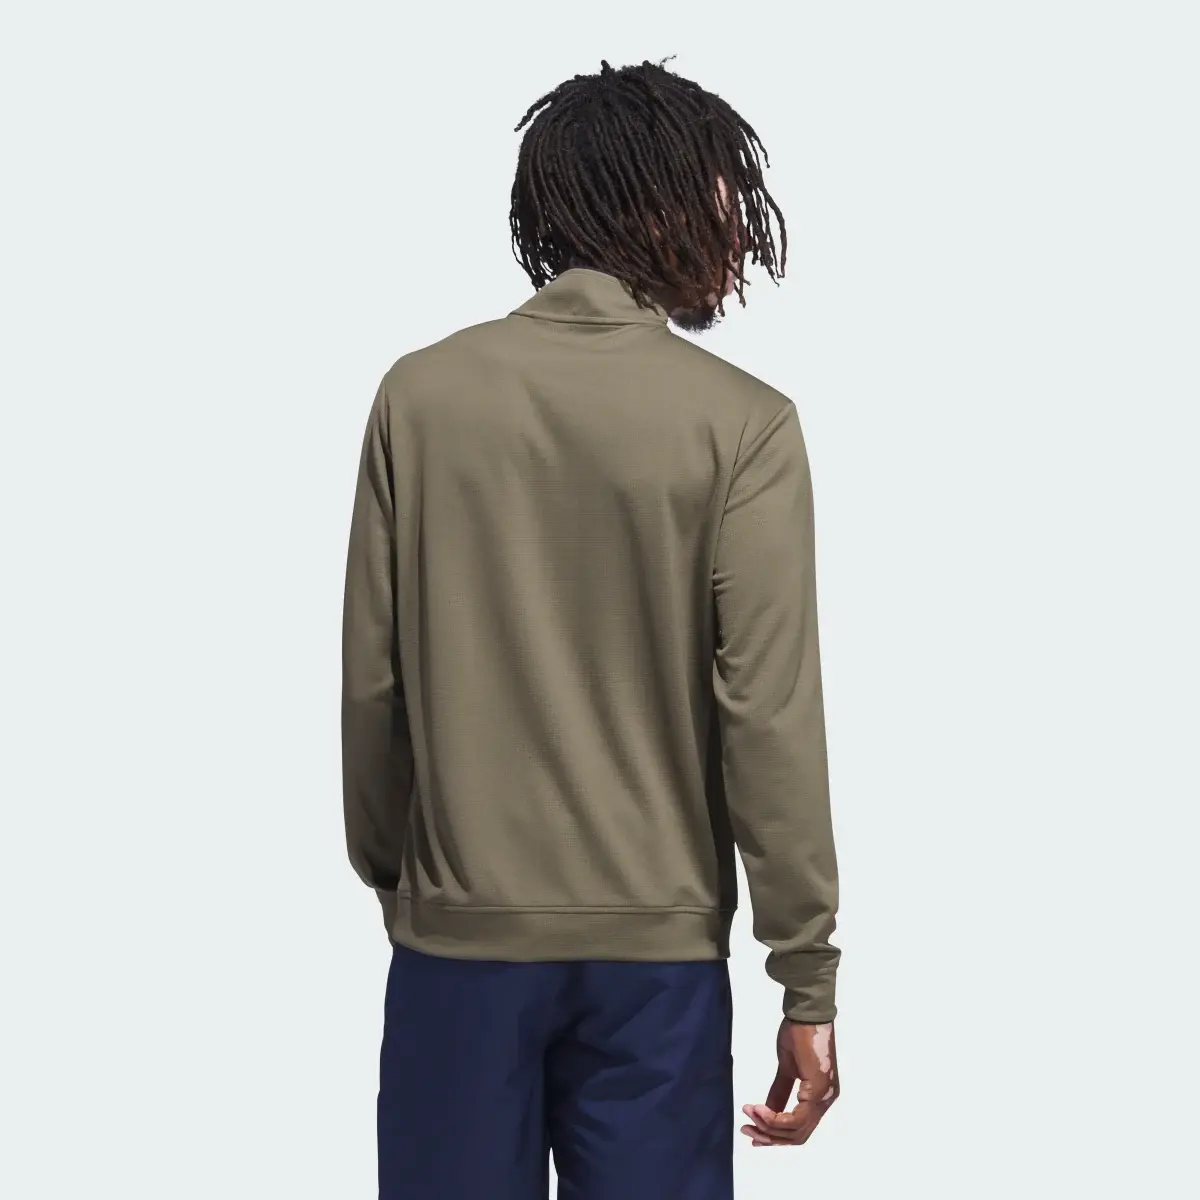 Adidas Quarter-Zip Pullover. 3